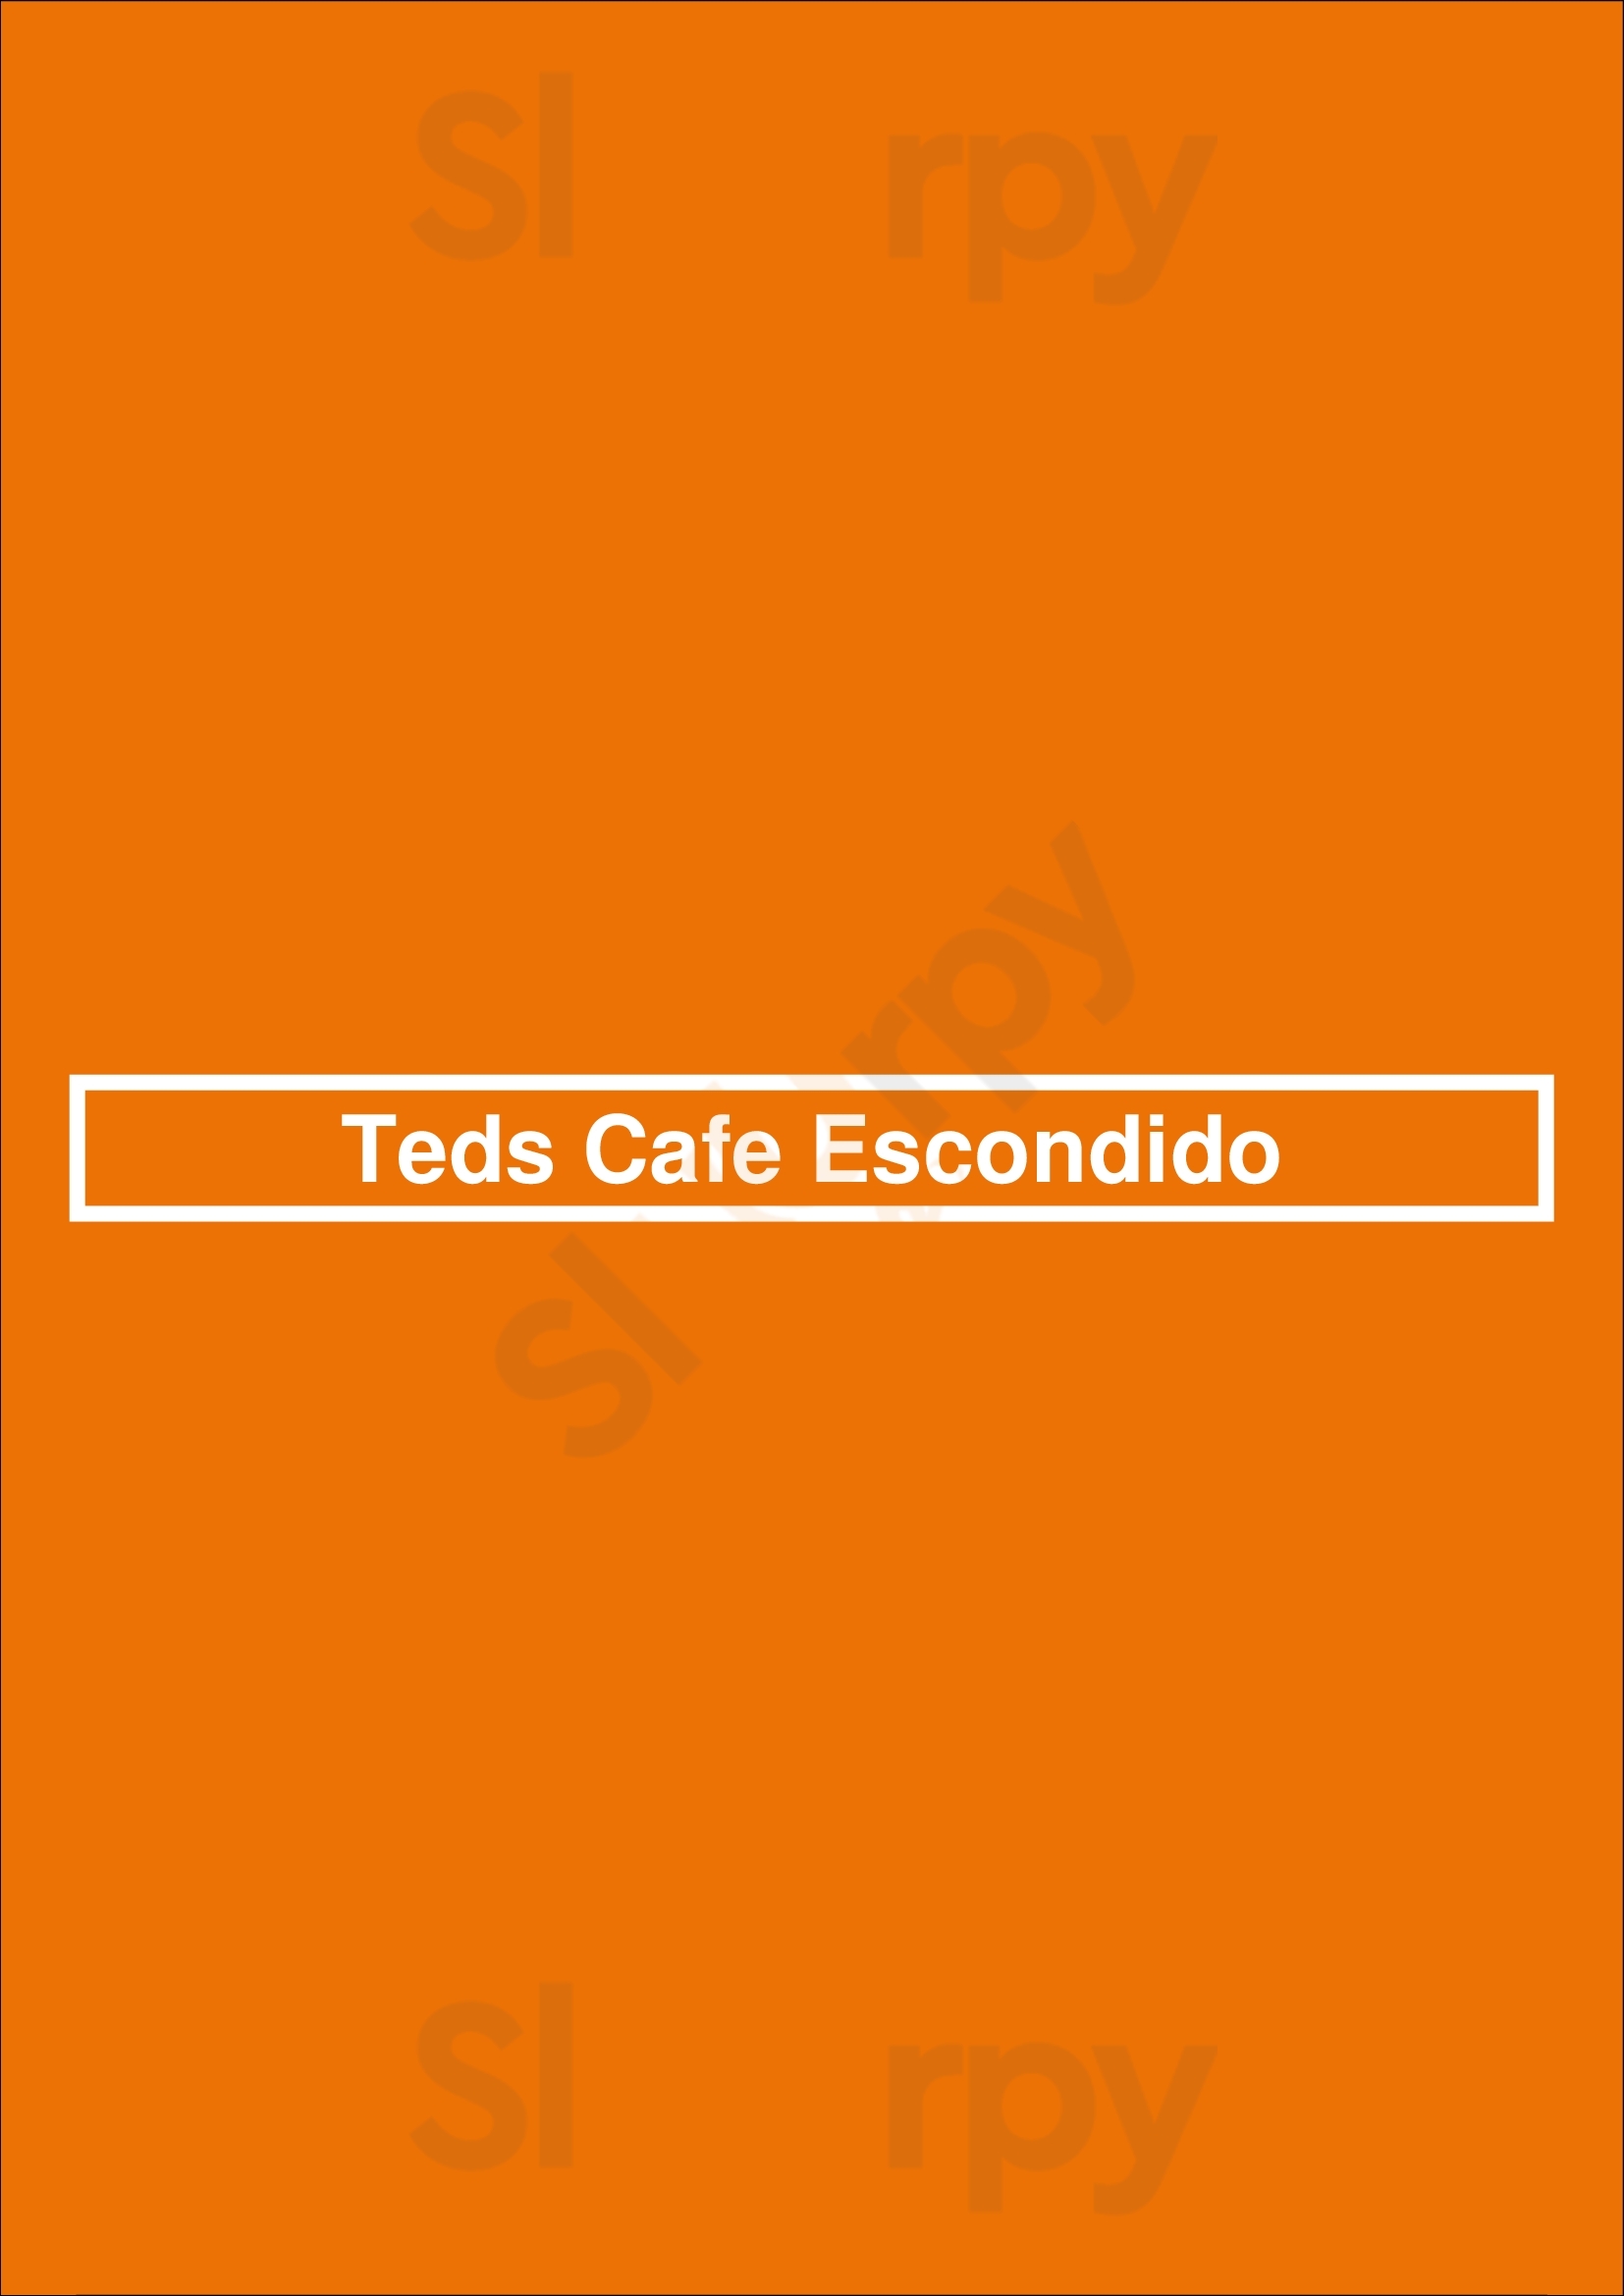 Ted's Cafe - Escondido Oklahoma City Menu - 1